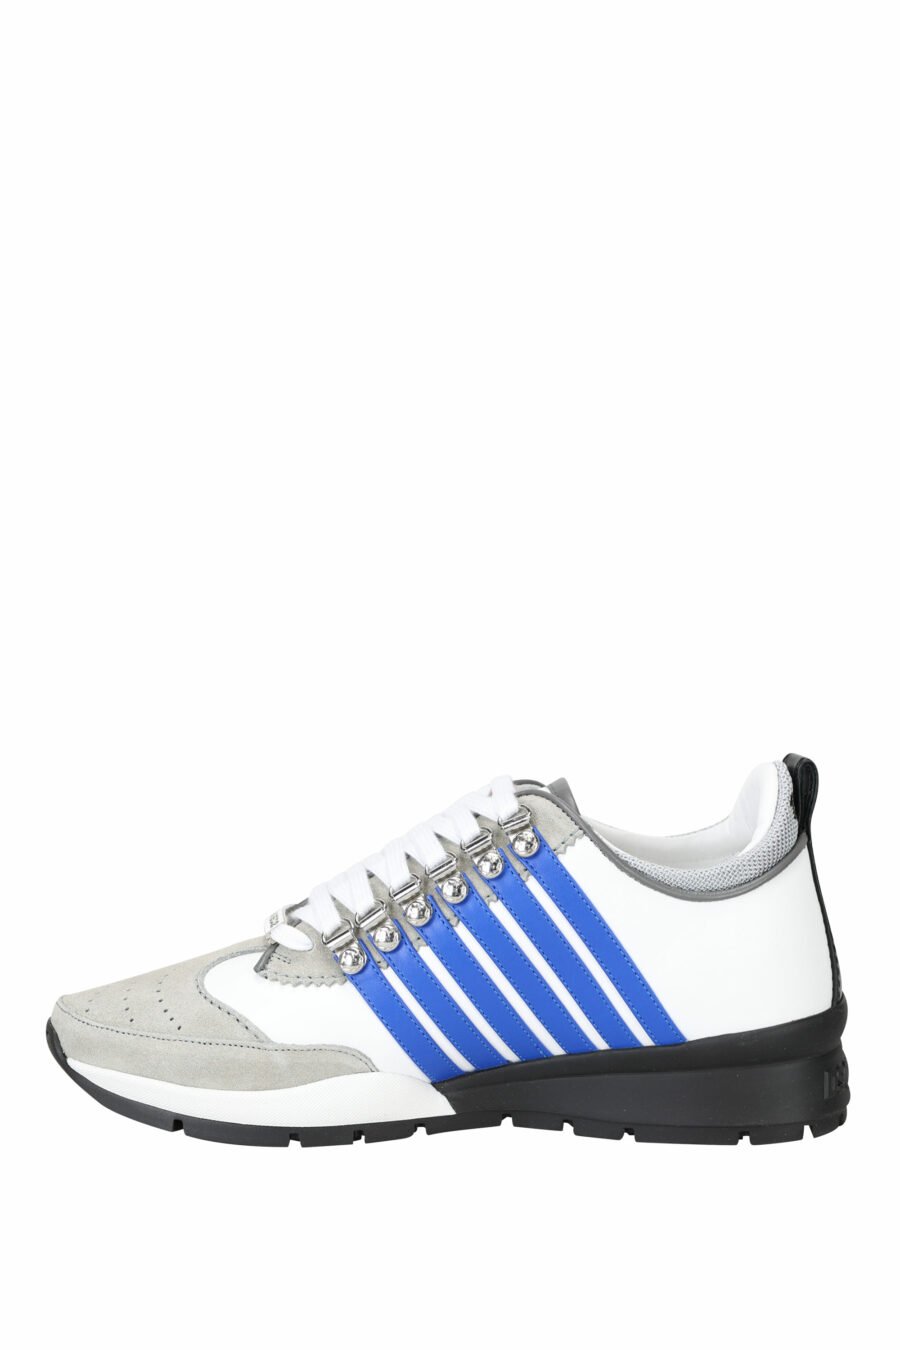 Zapatillas blancas con mix en gris, líneas azules y detalles en negro - 8055777244326 2